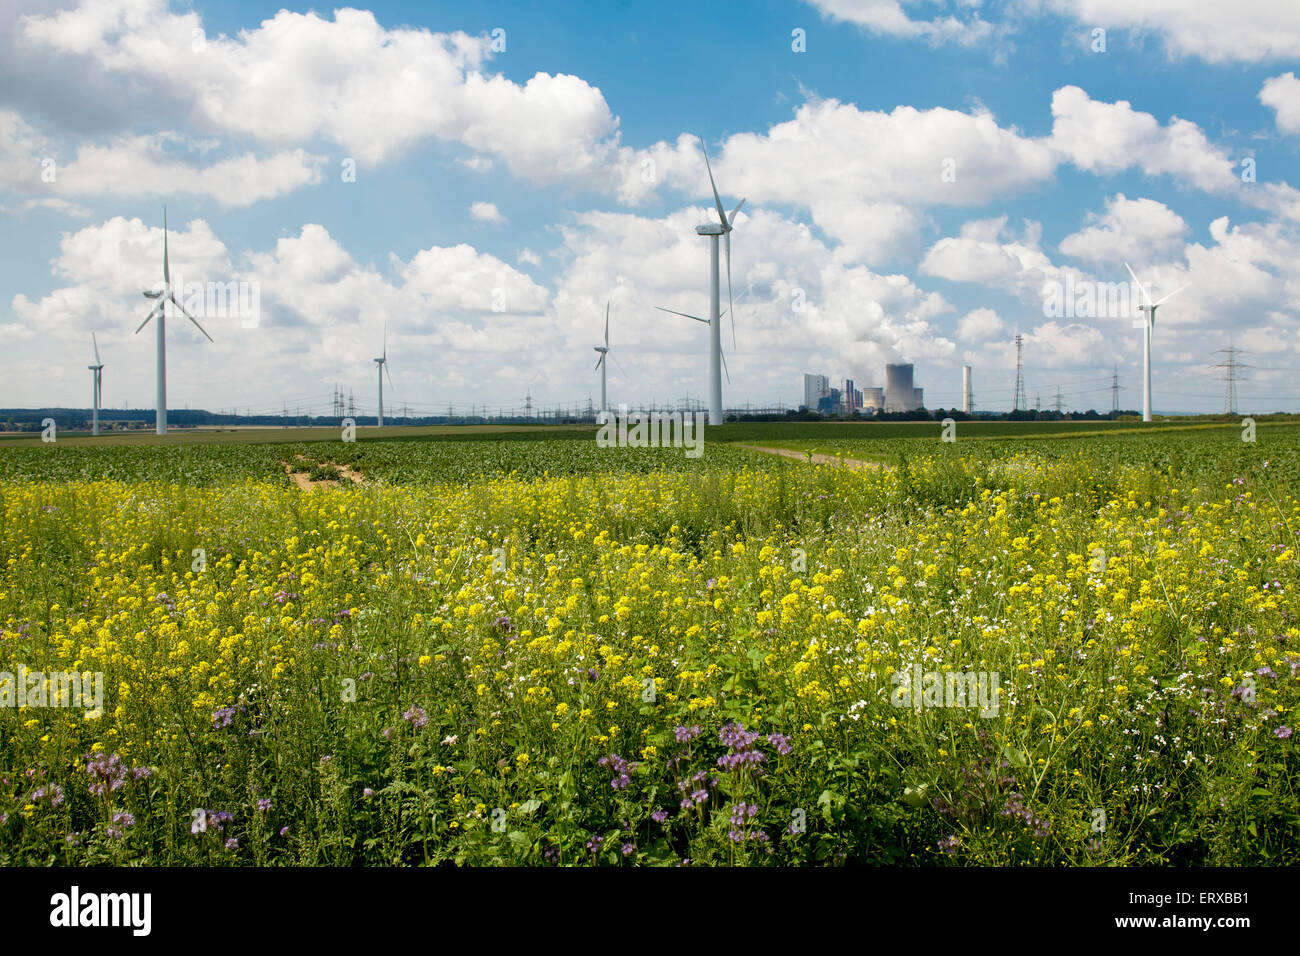 L'Europe, l'Allemagne, en Rhénanie du Nord-Westphalie, fleurs sauvages, les éoliennes près de Bergheim, à l'arrière-plan le brown coal power s Banque D'Images